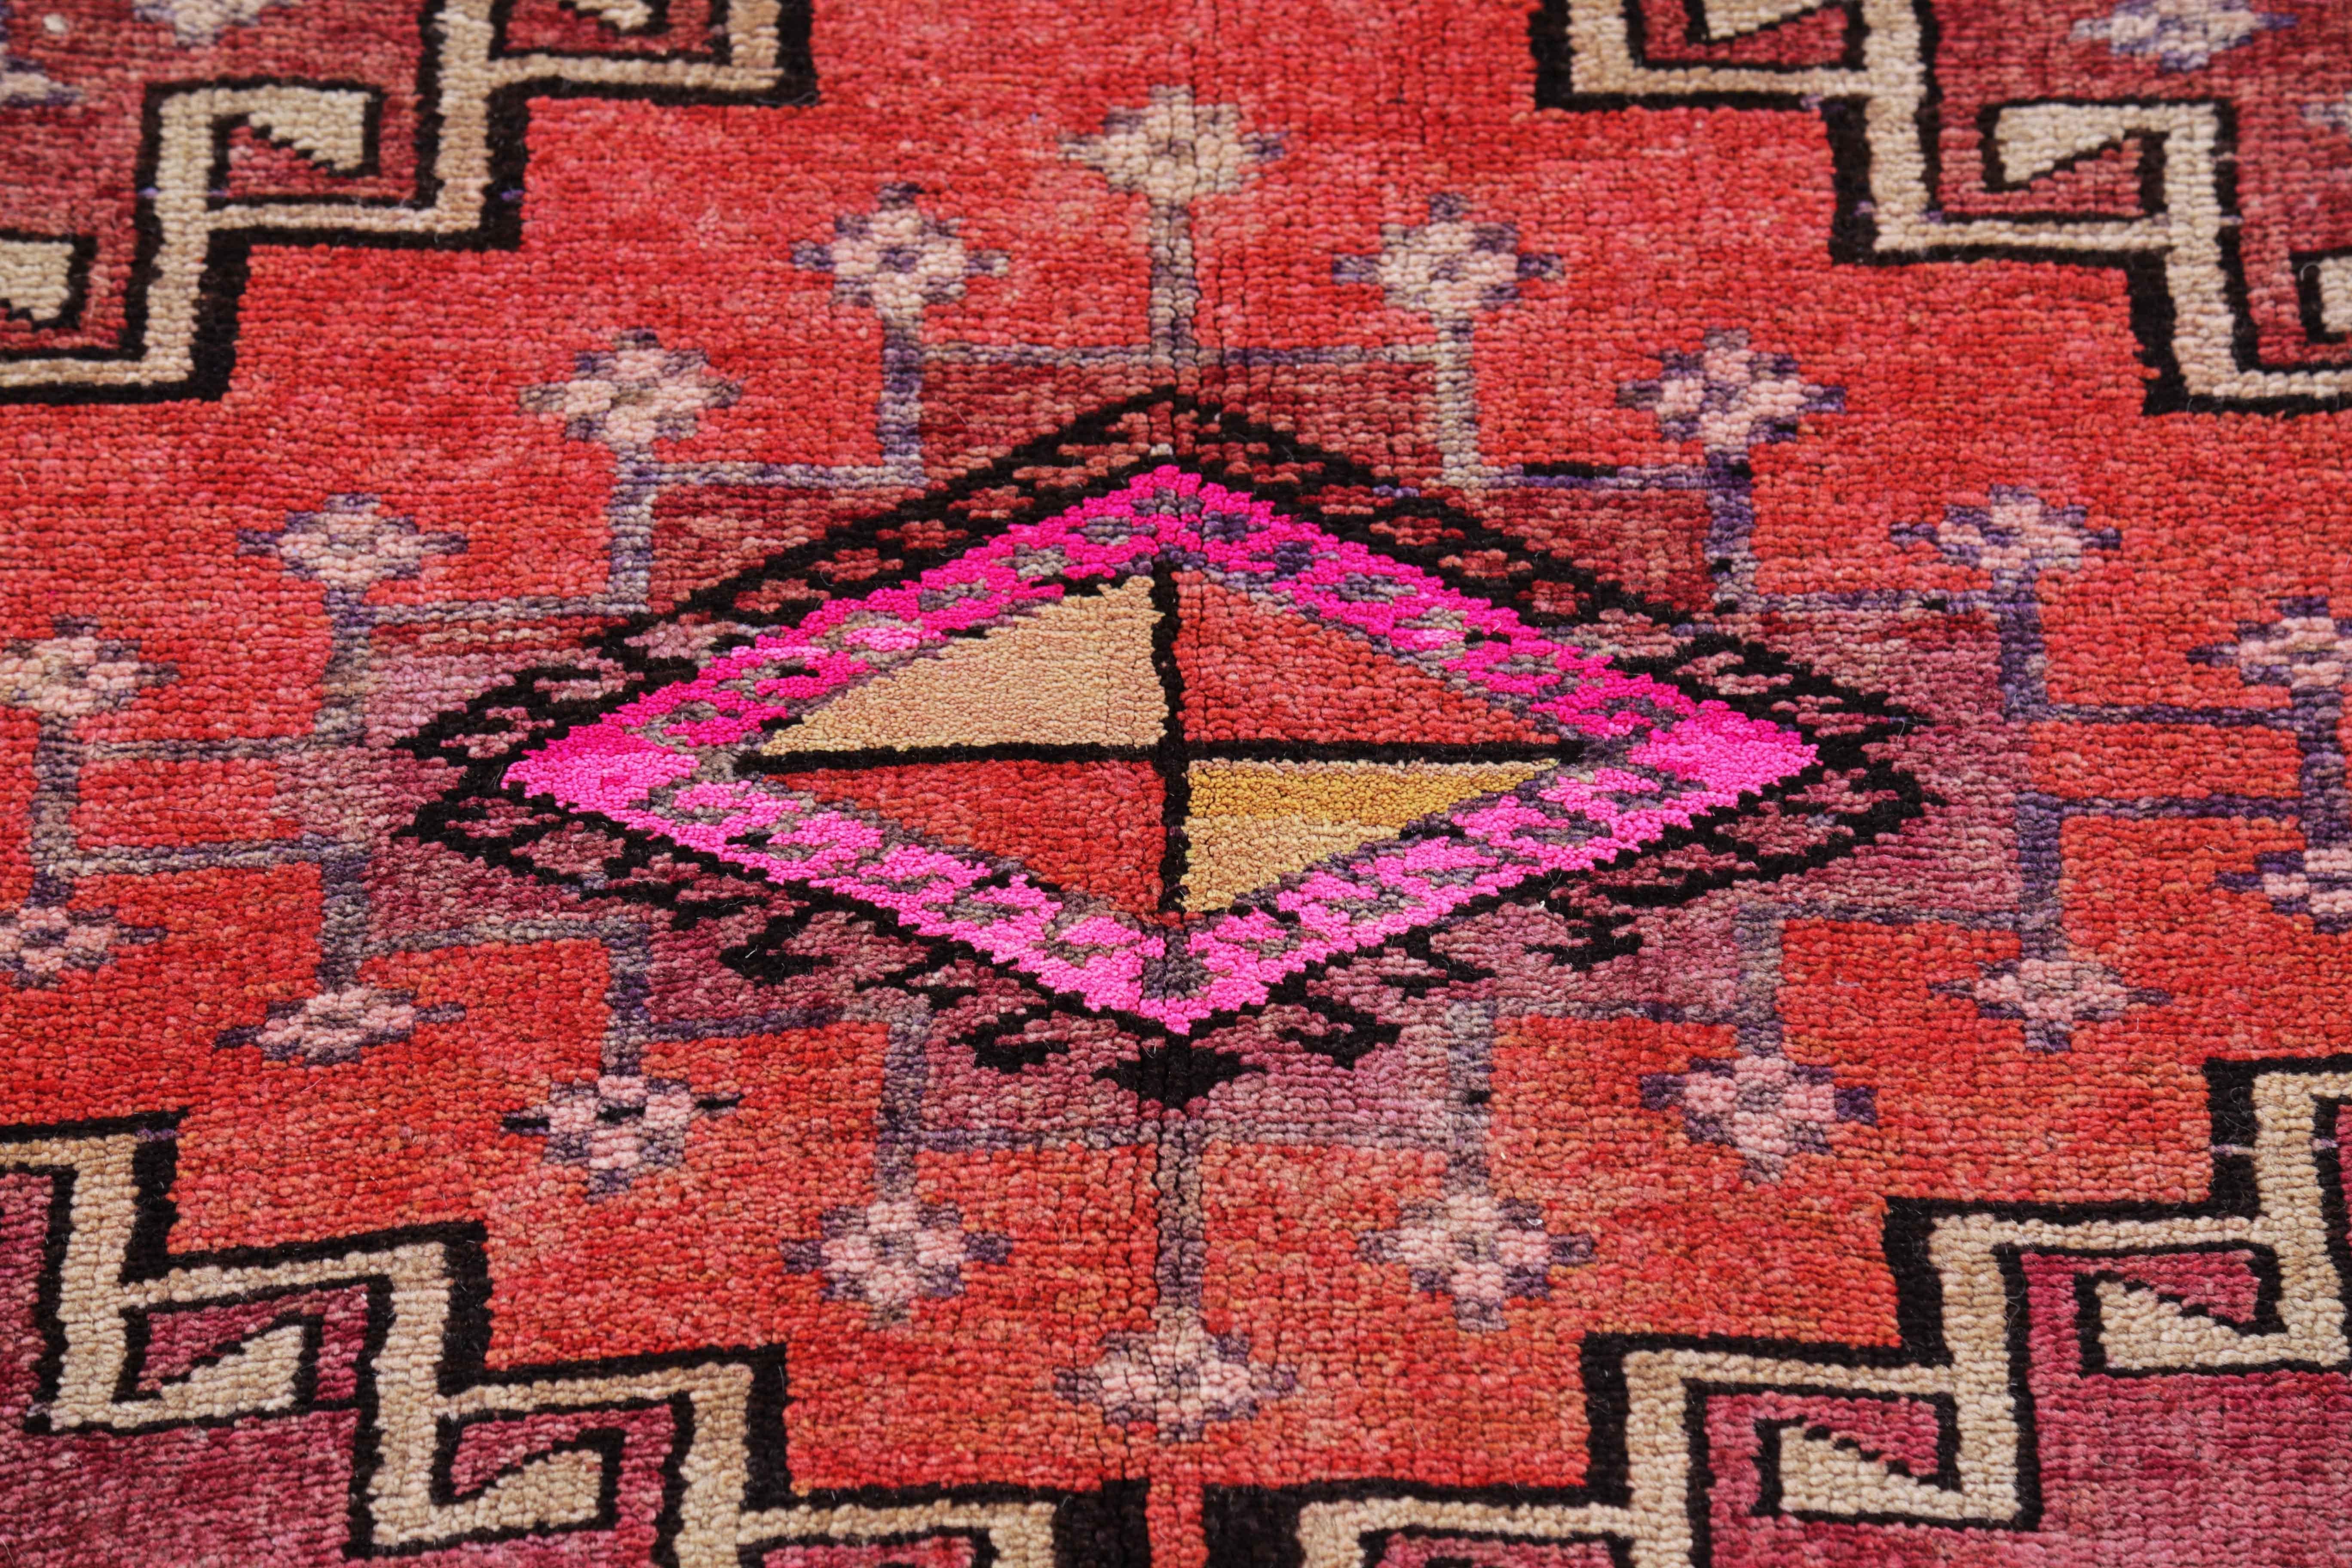 Hand-Woven Antique Persian Area Rug Azerbaijan Design For Sale